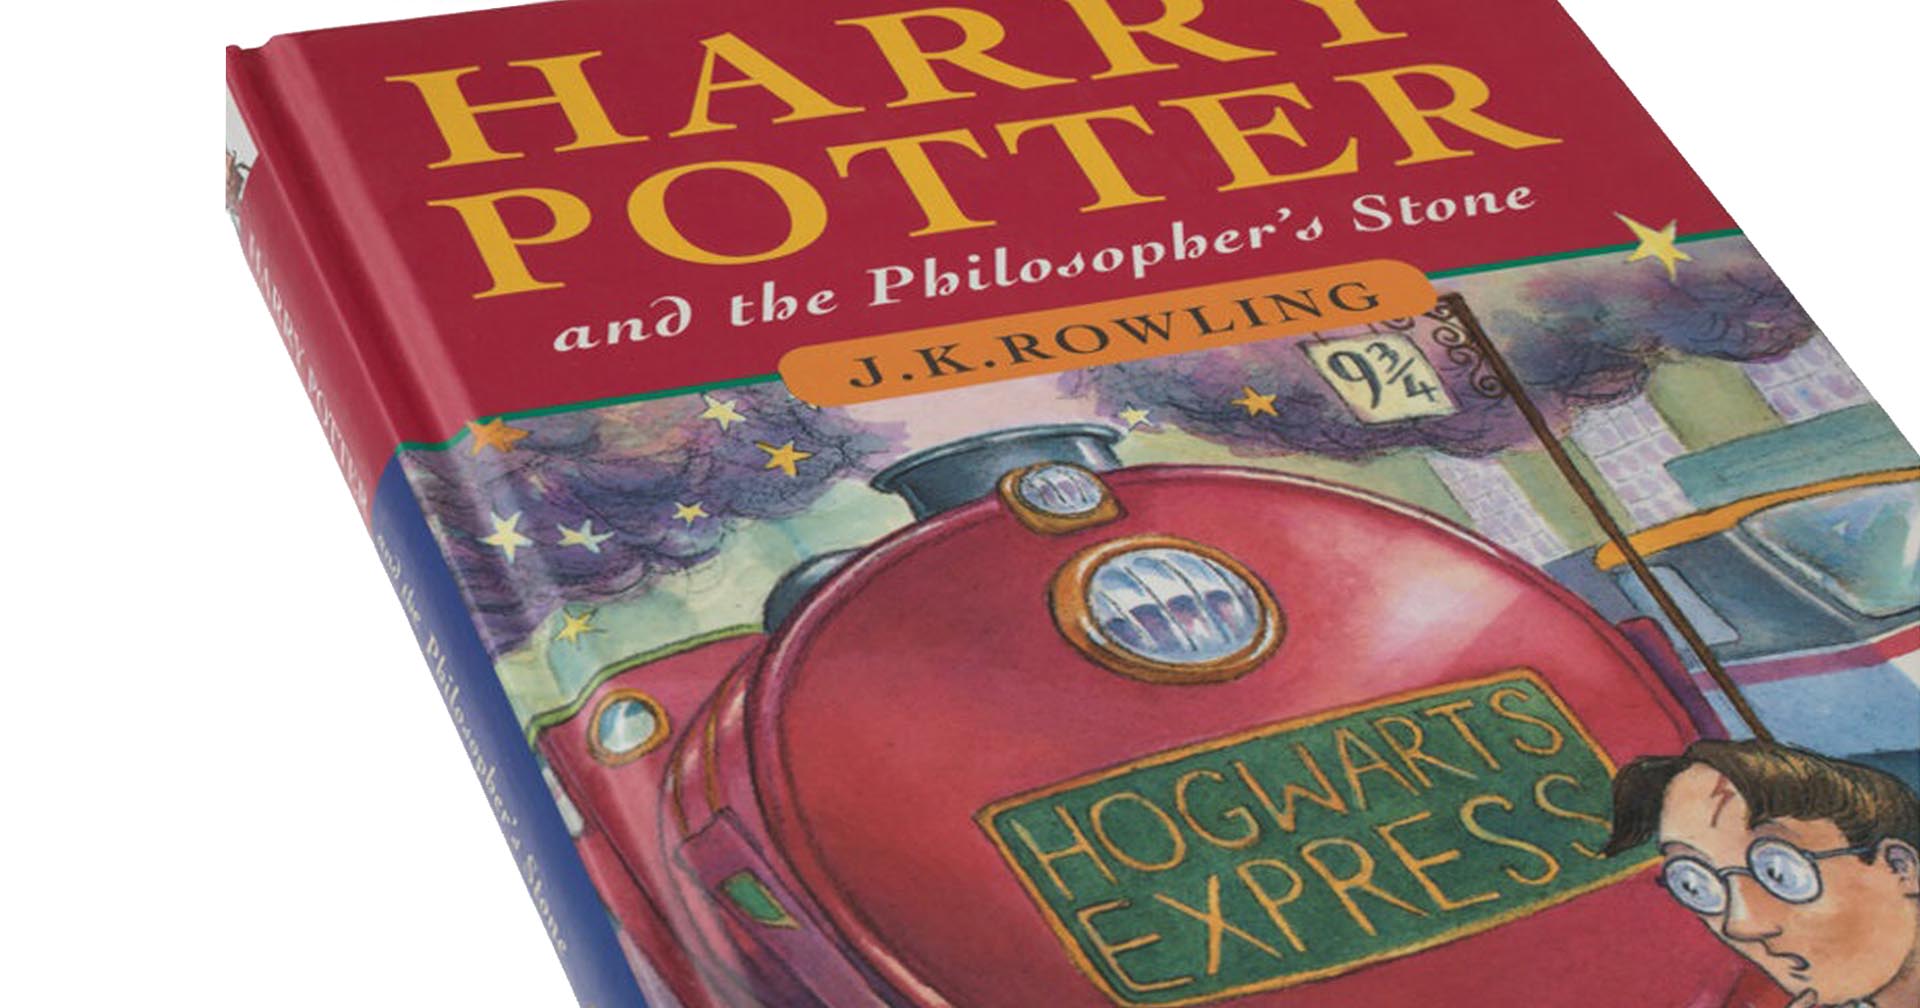 แฮร์รี่ พอตเตอร์กับศิลาอาถรรพ์ ฉบับตีพิมพ์ครั้งแรก ถูกประมูลขายไปในราคา 15 ล้านบาท!